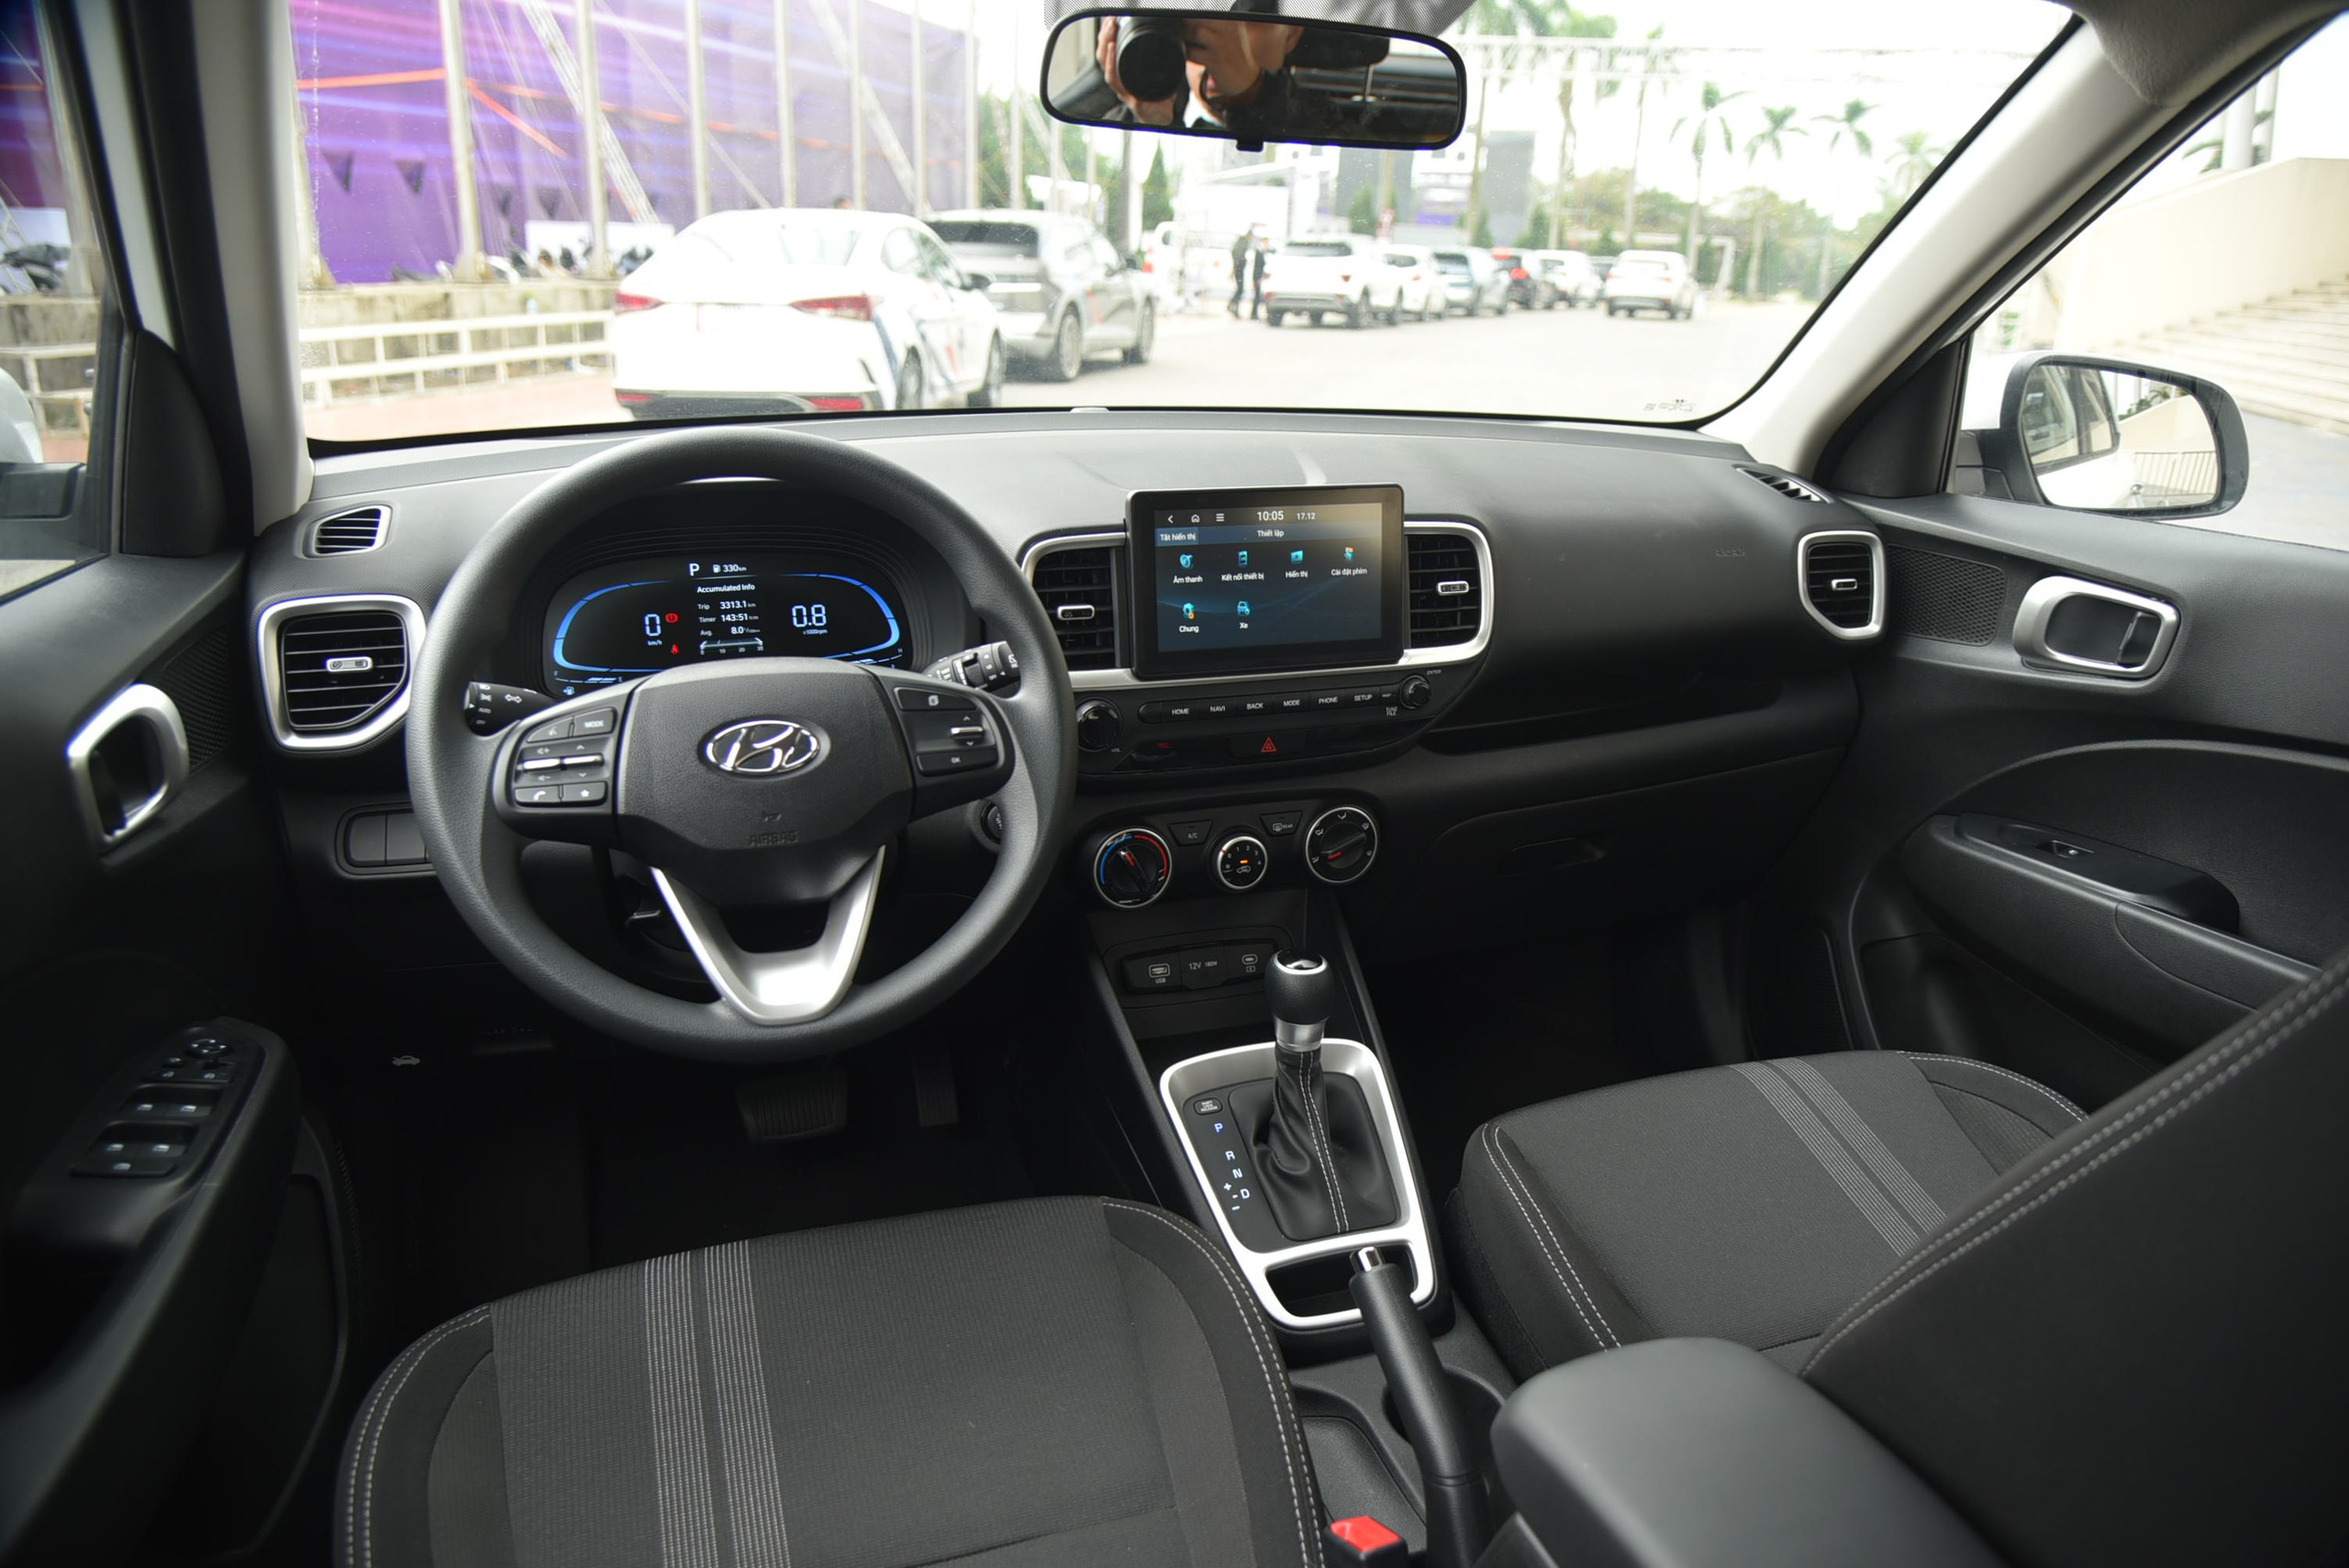 Ngồi thử Hyundai Venue phiên bản tiêu chuẩn: Rẻ hơn 40 triệu đồng, trang bị không khác biệt nhiều - Ảnh 8.